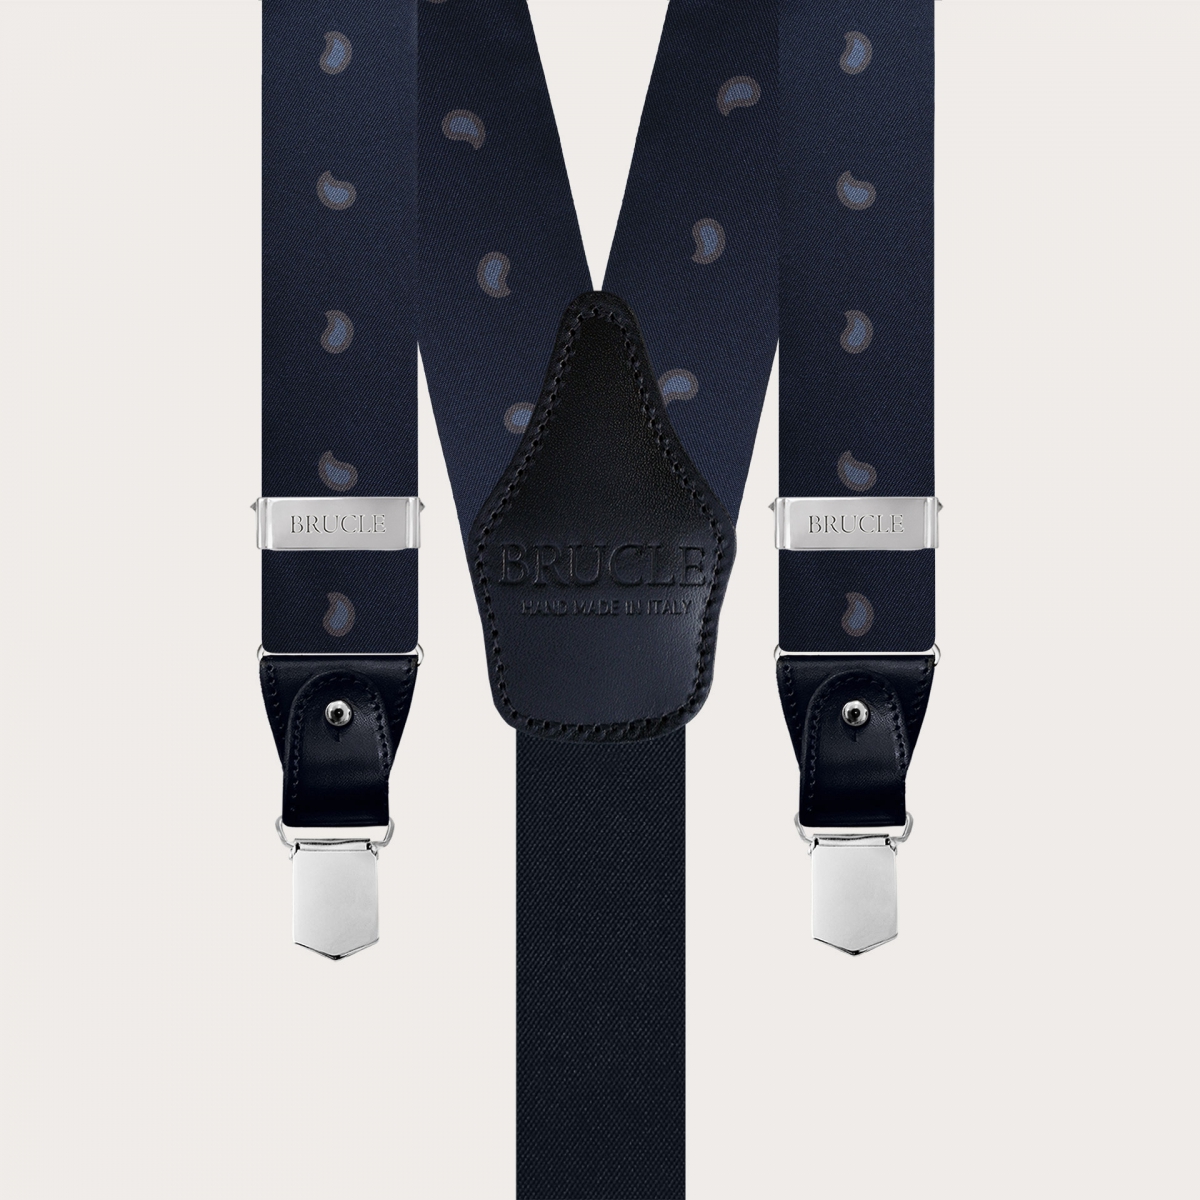 Y-shape fabric suspenders in silk, blue paisley macro pattern